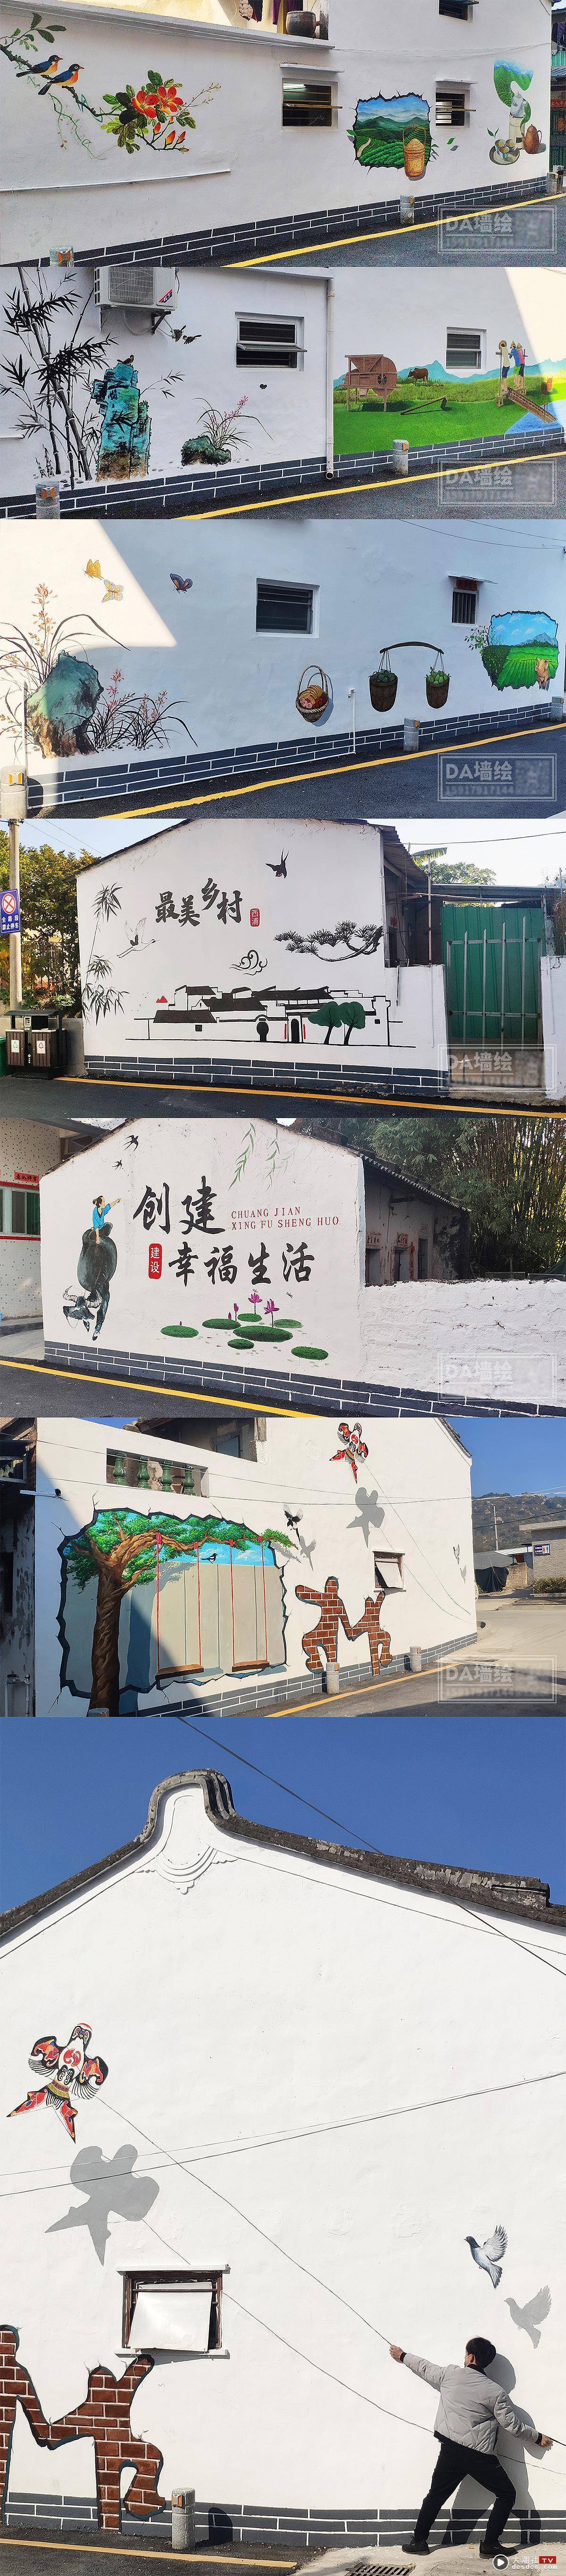 美丽乡村墙绘项目——汕头市澄海区西浦村美丽乡村项目